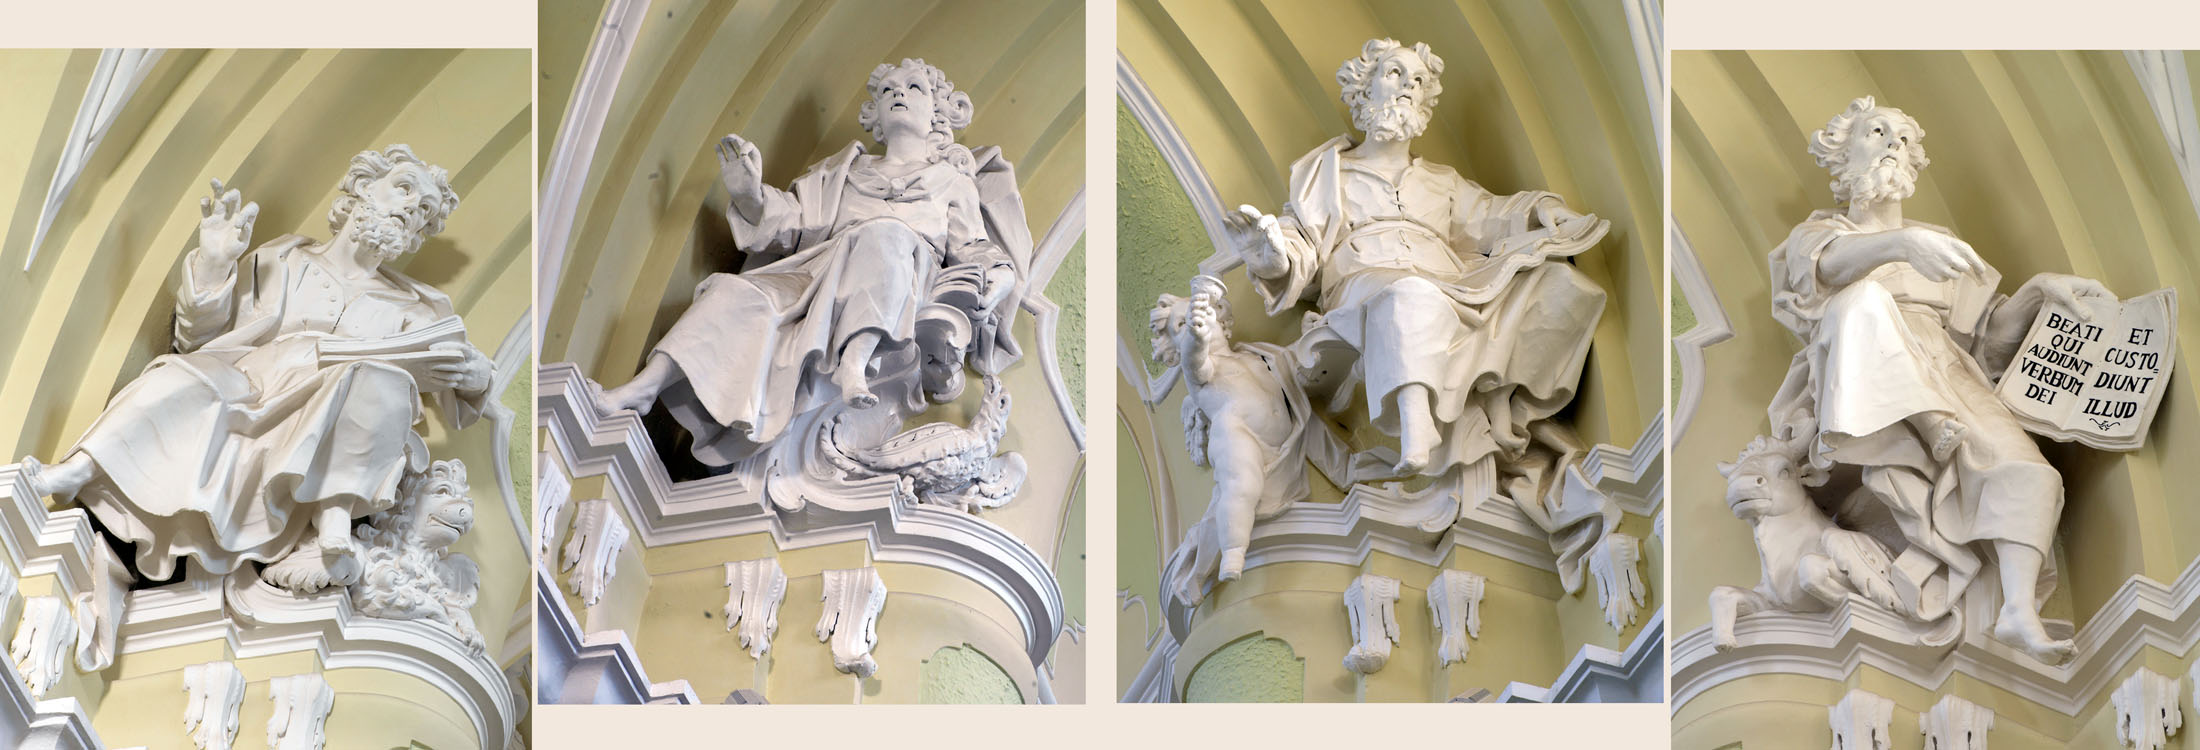 Le sculture dei quattro Evangelisti